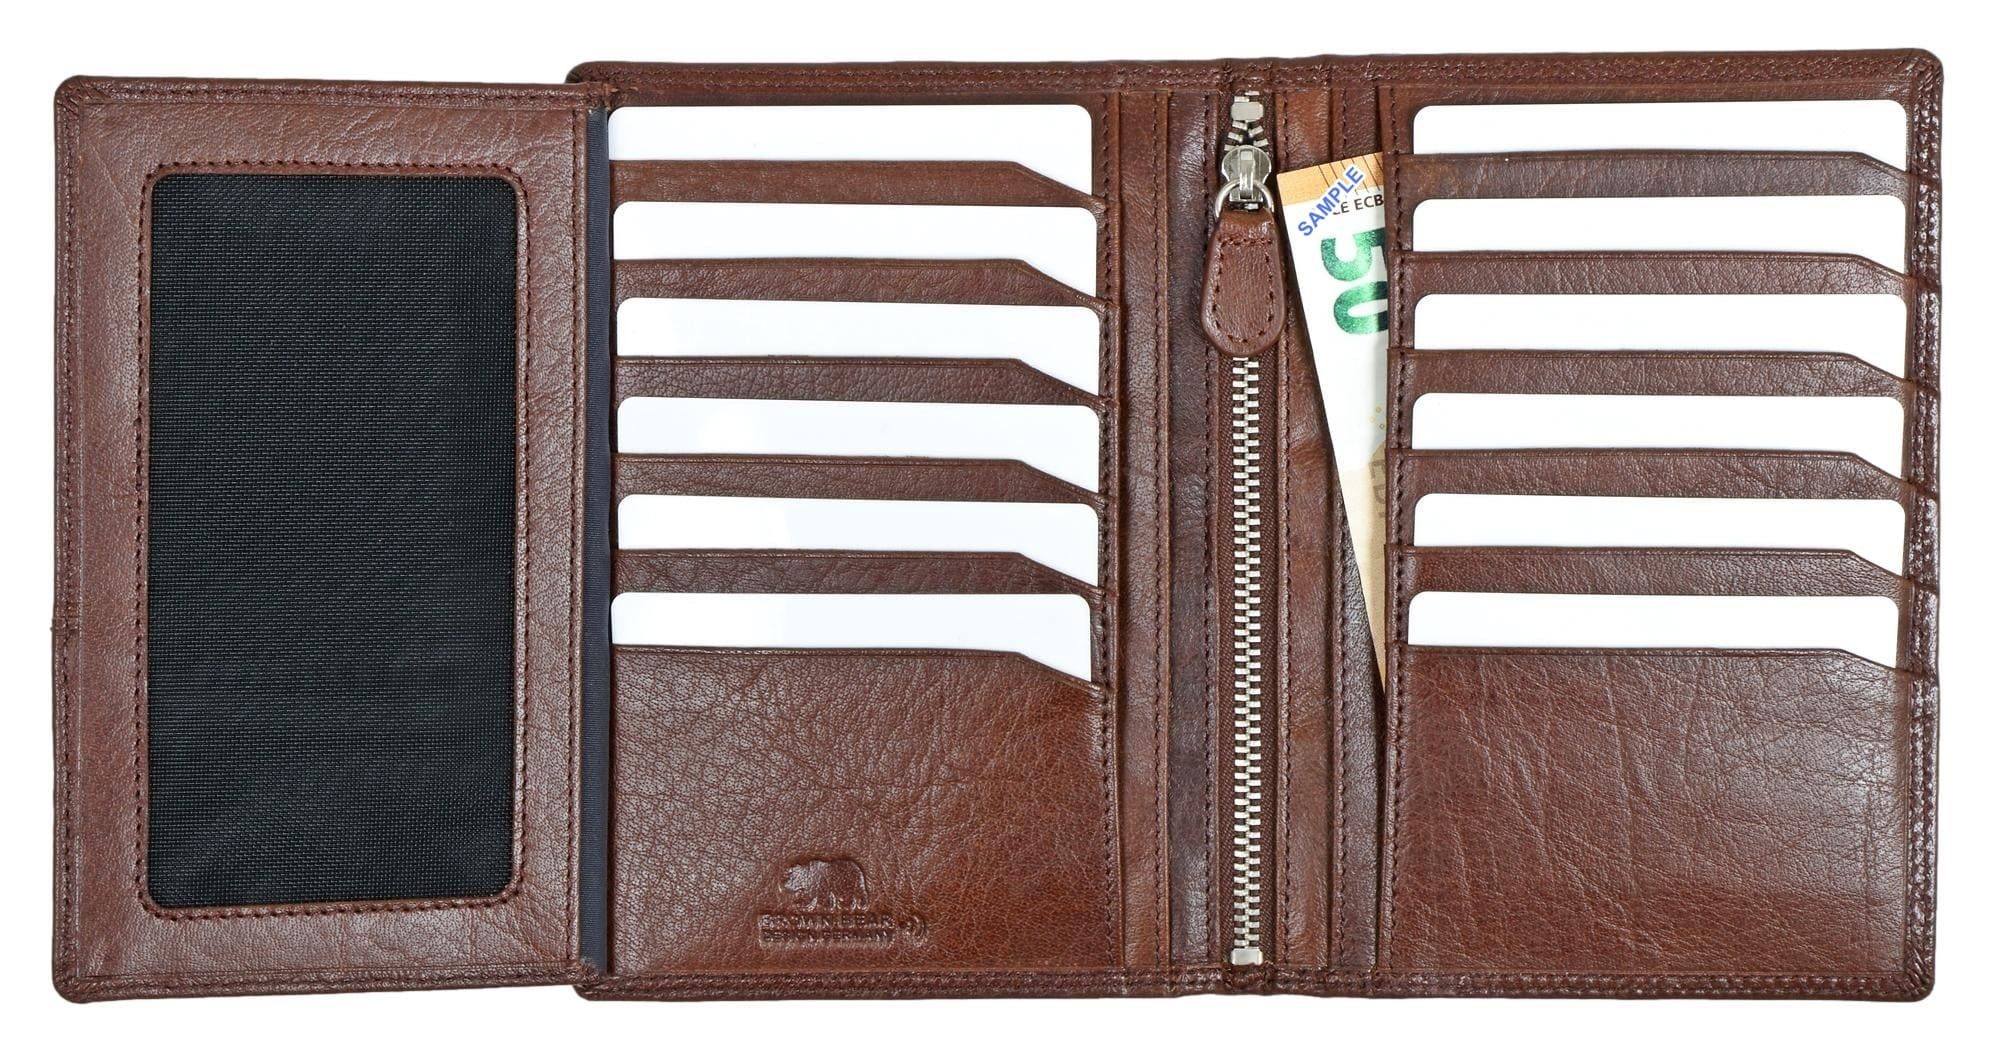 Münzfach ohne Braun 13 Braun Echtleder, Toscana Bear RFID 5 Schutz 8013 Brown Kartenfächer Brieftasche Ausweisfächer Sichtfächer Classic